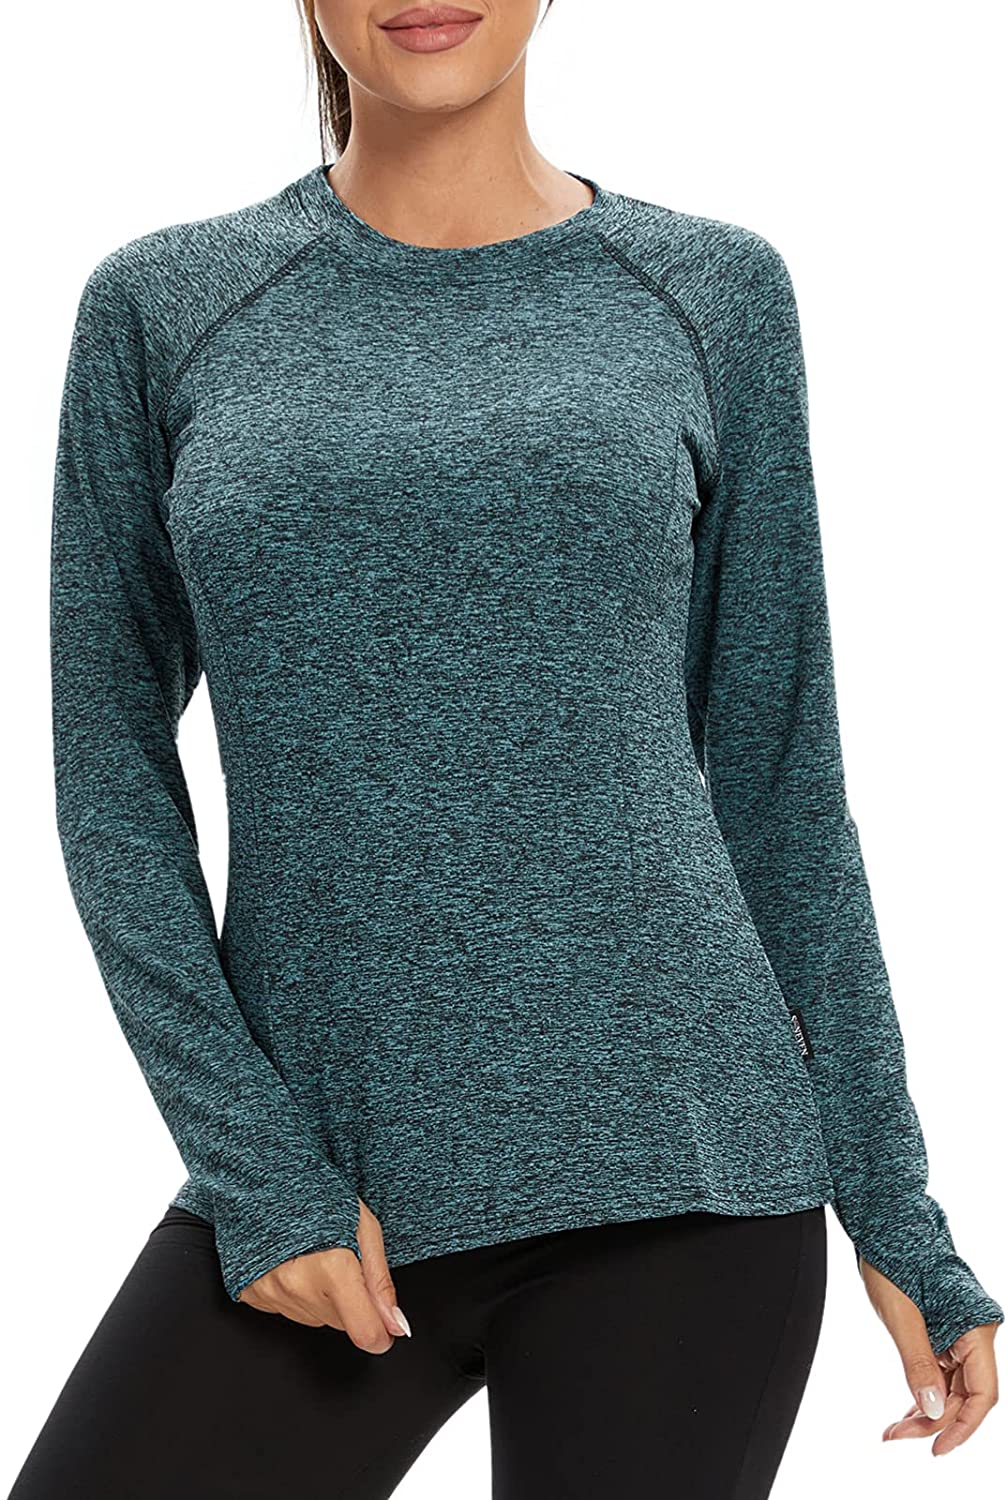 thumbnail 14  - Soneven Women Fleece Thermal Long Sleeve Running Shirt Workout Tops Moisture Wic